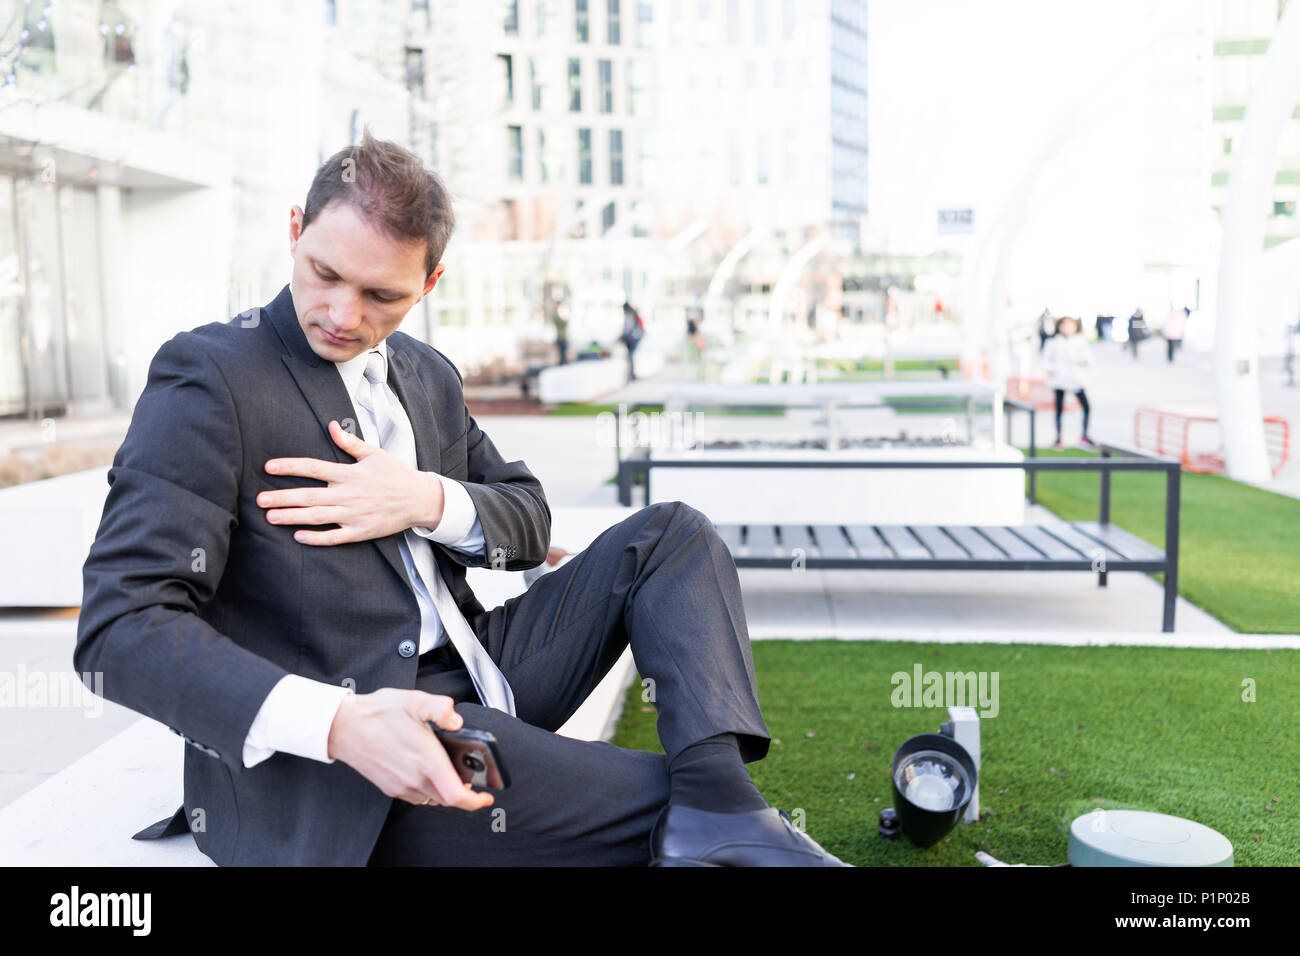 Jeune homme d'époussetage nettoyage off suit sitting on bench in urban  green Park à la recherche vers le bas avec cravate sur pause interview  Photo Stock - Alamy